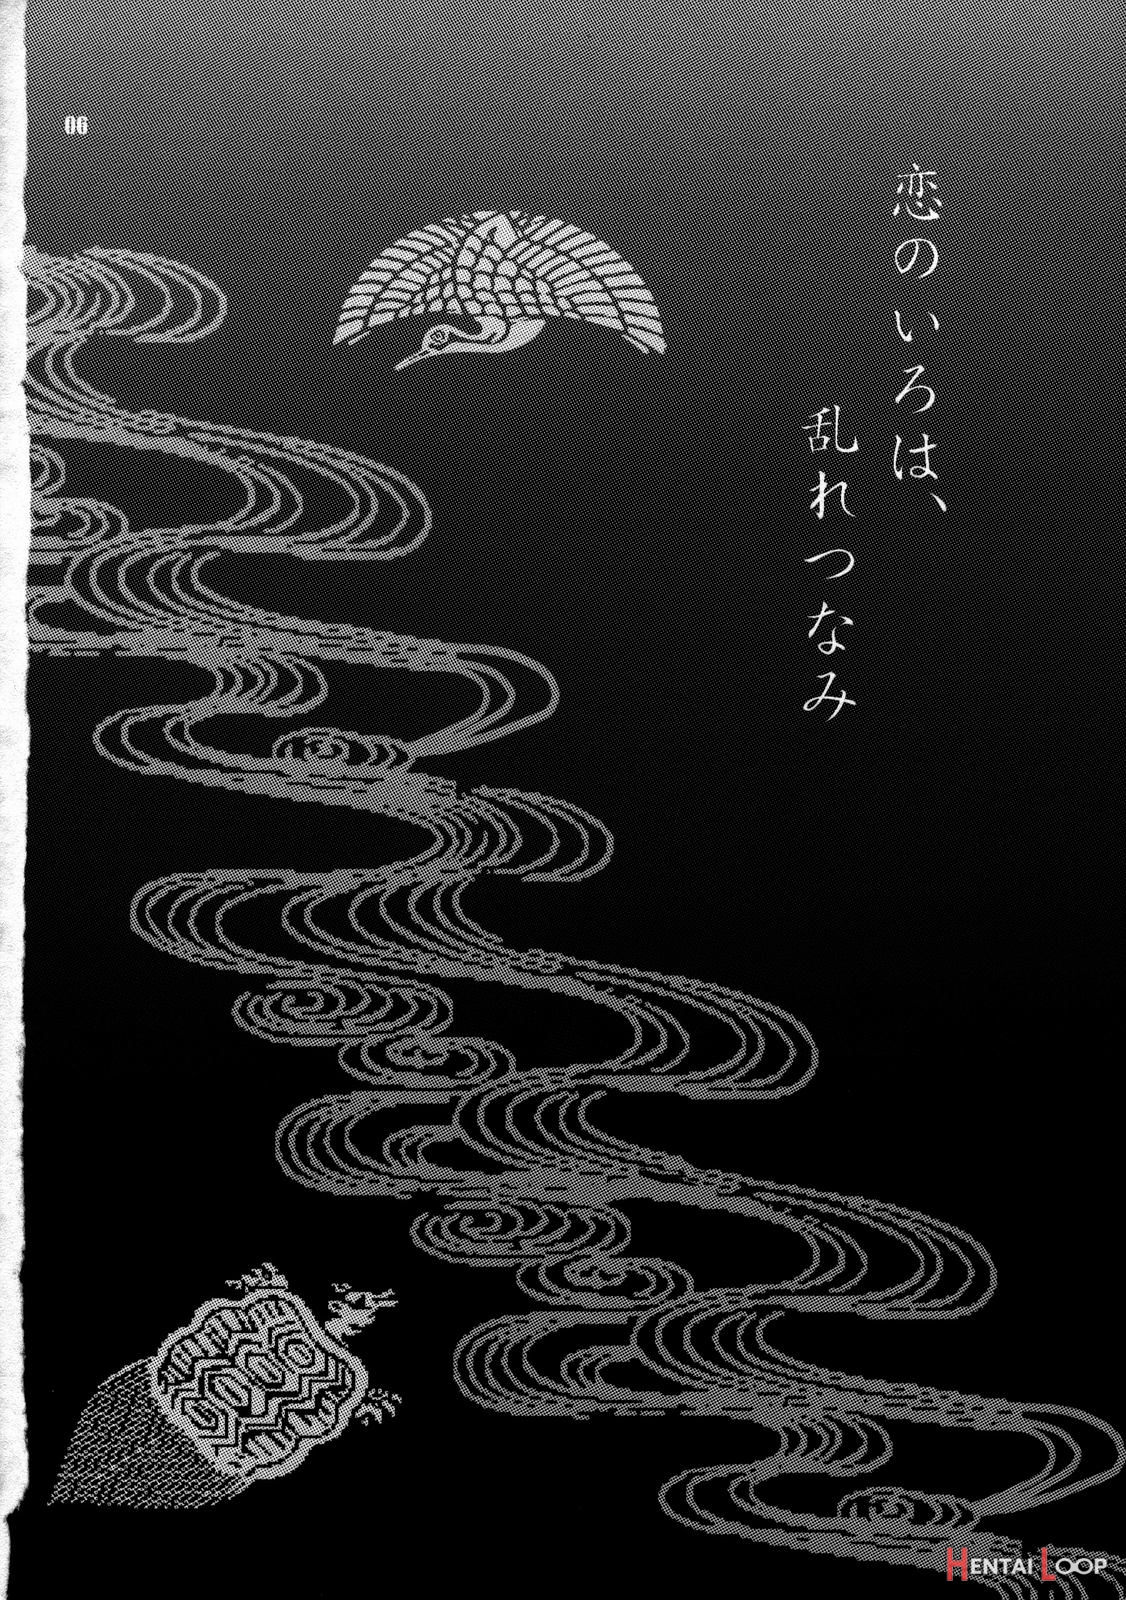 Yukiyanagi's Book 14 page 4